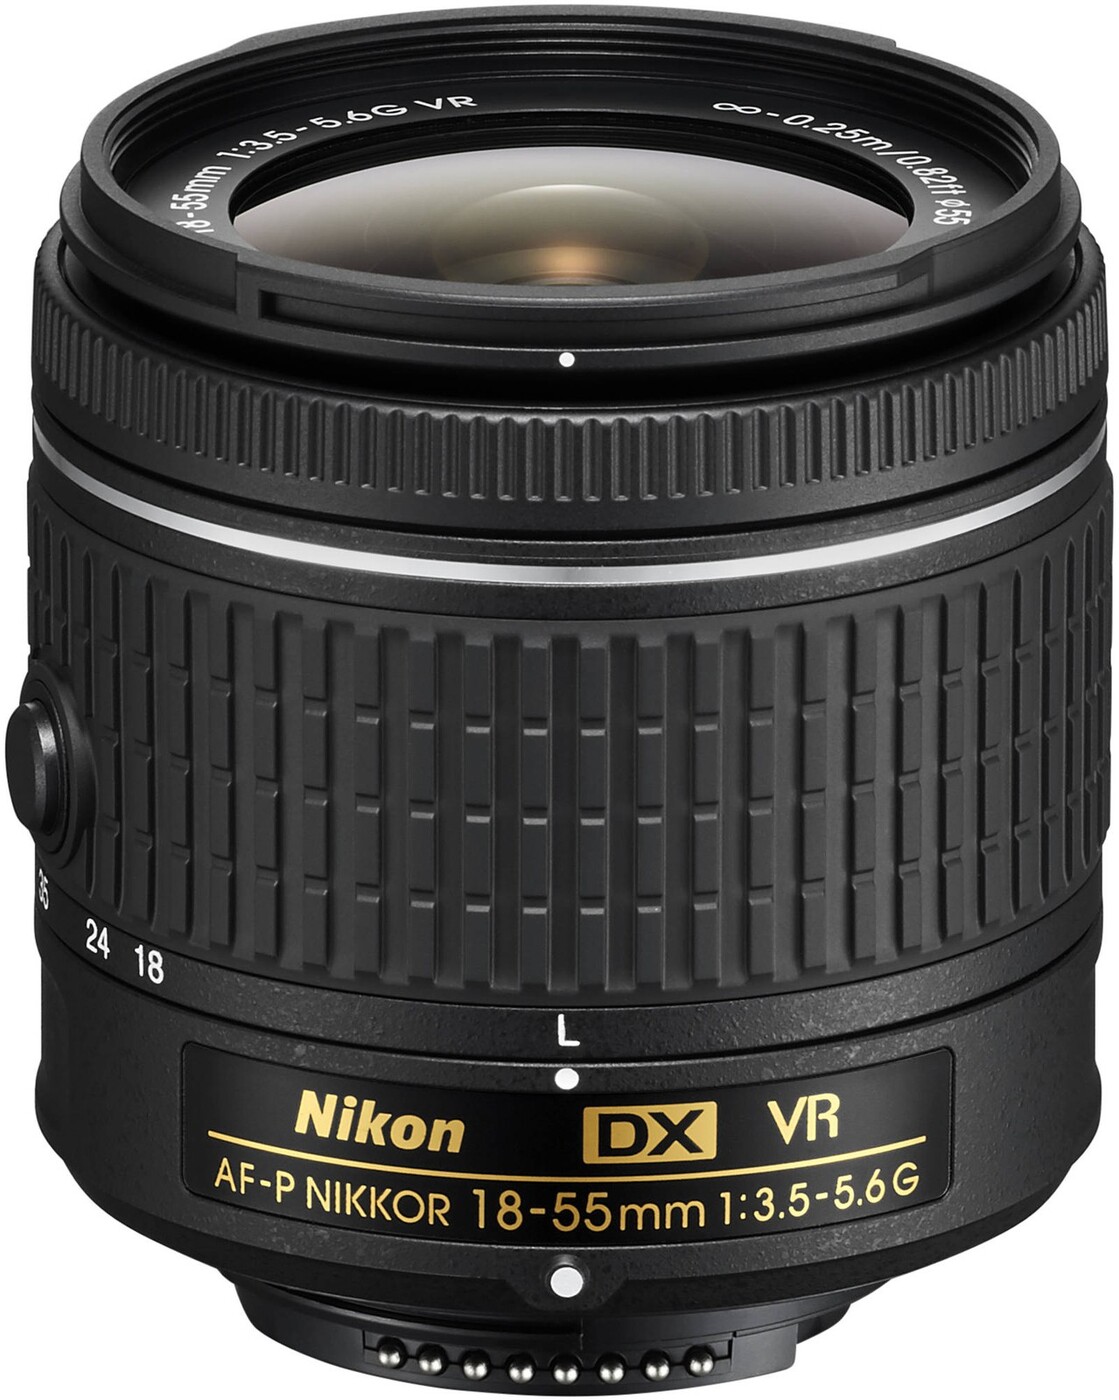 Nikon af s 35mm f 1.8 g